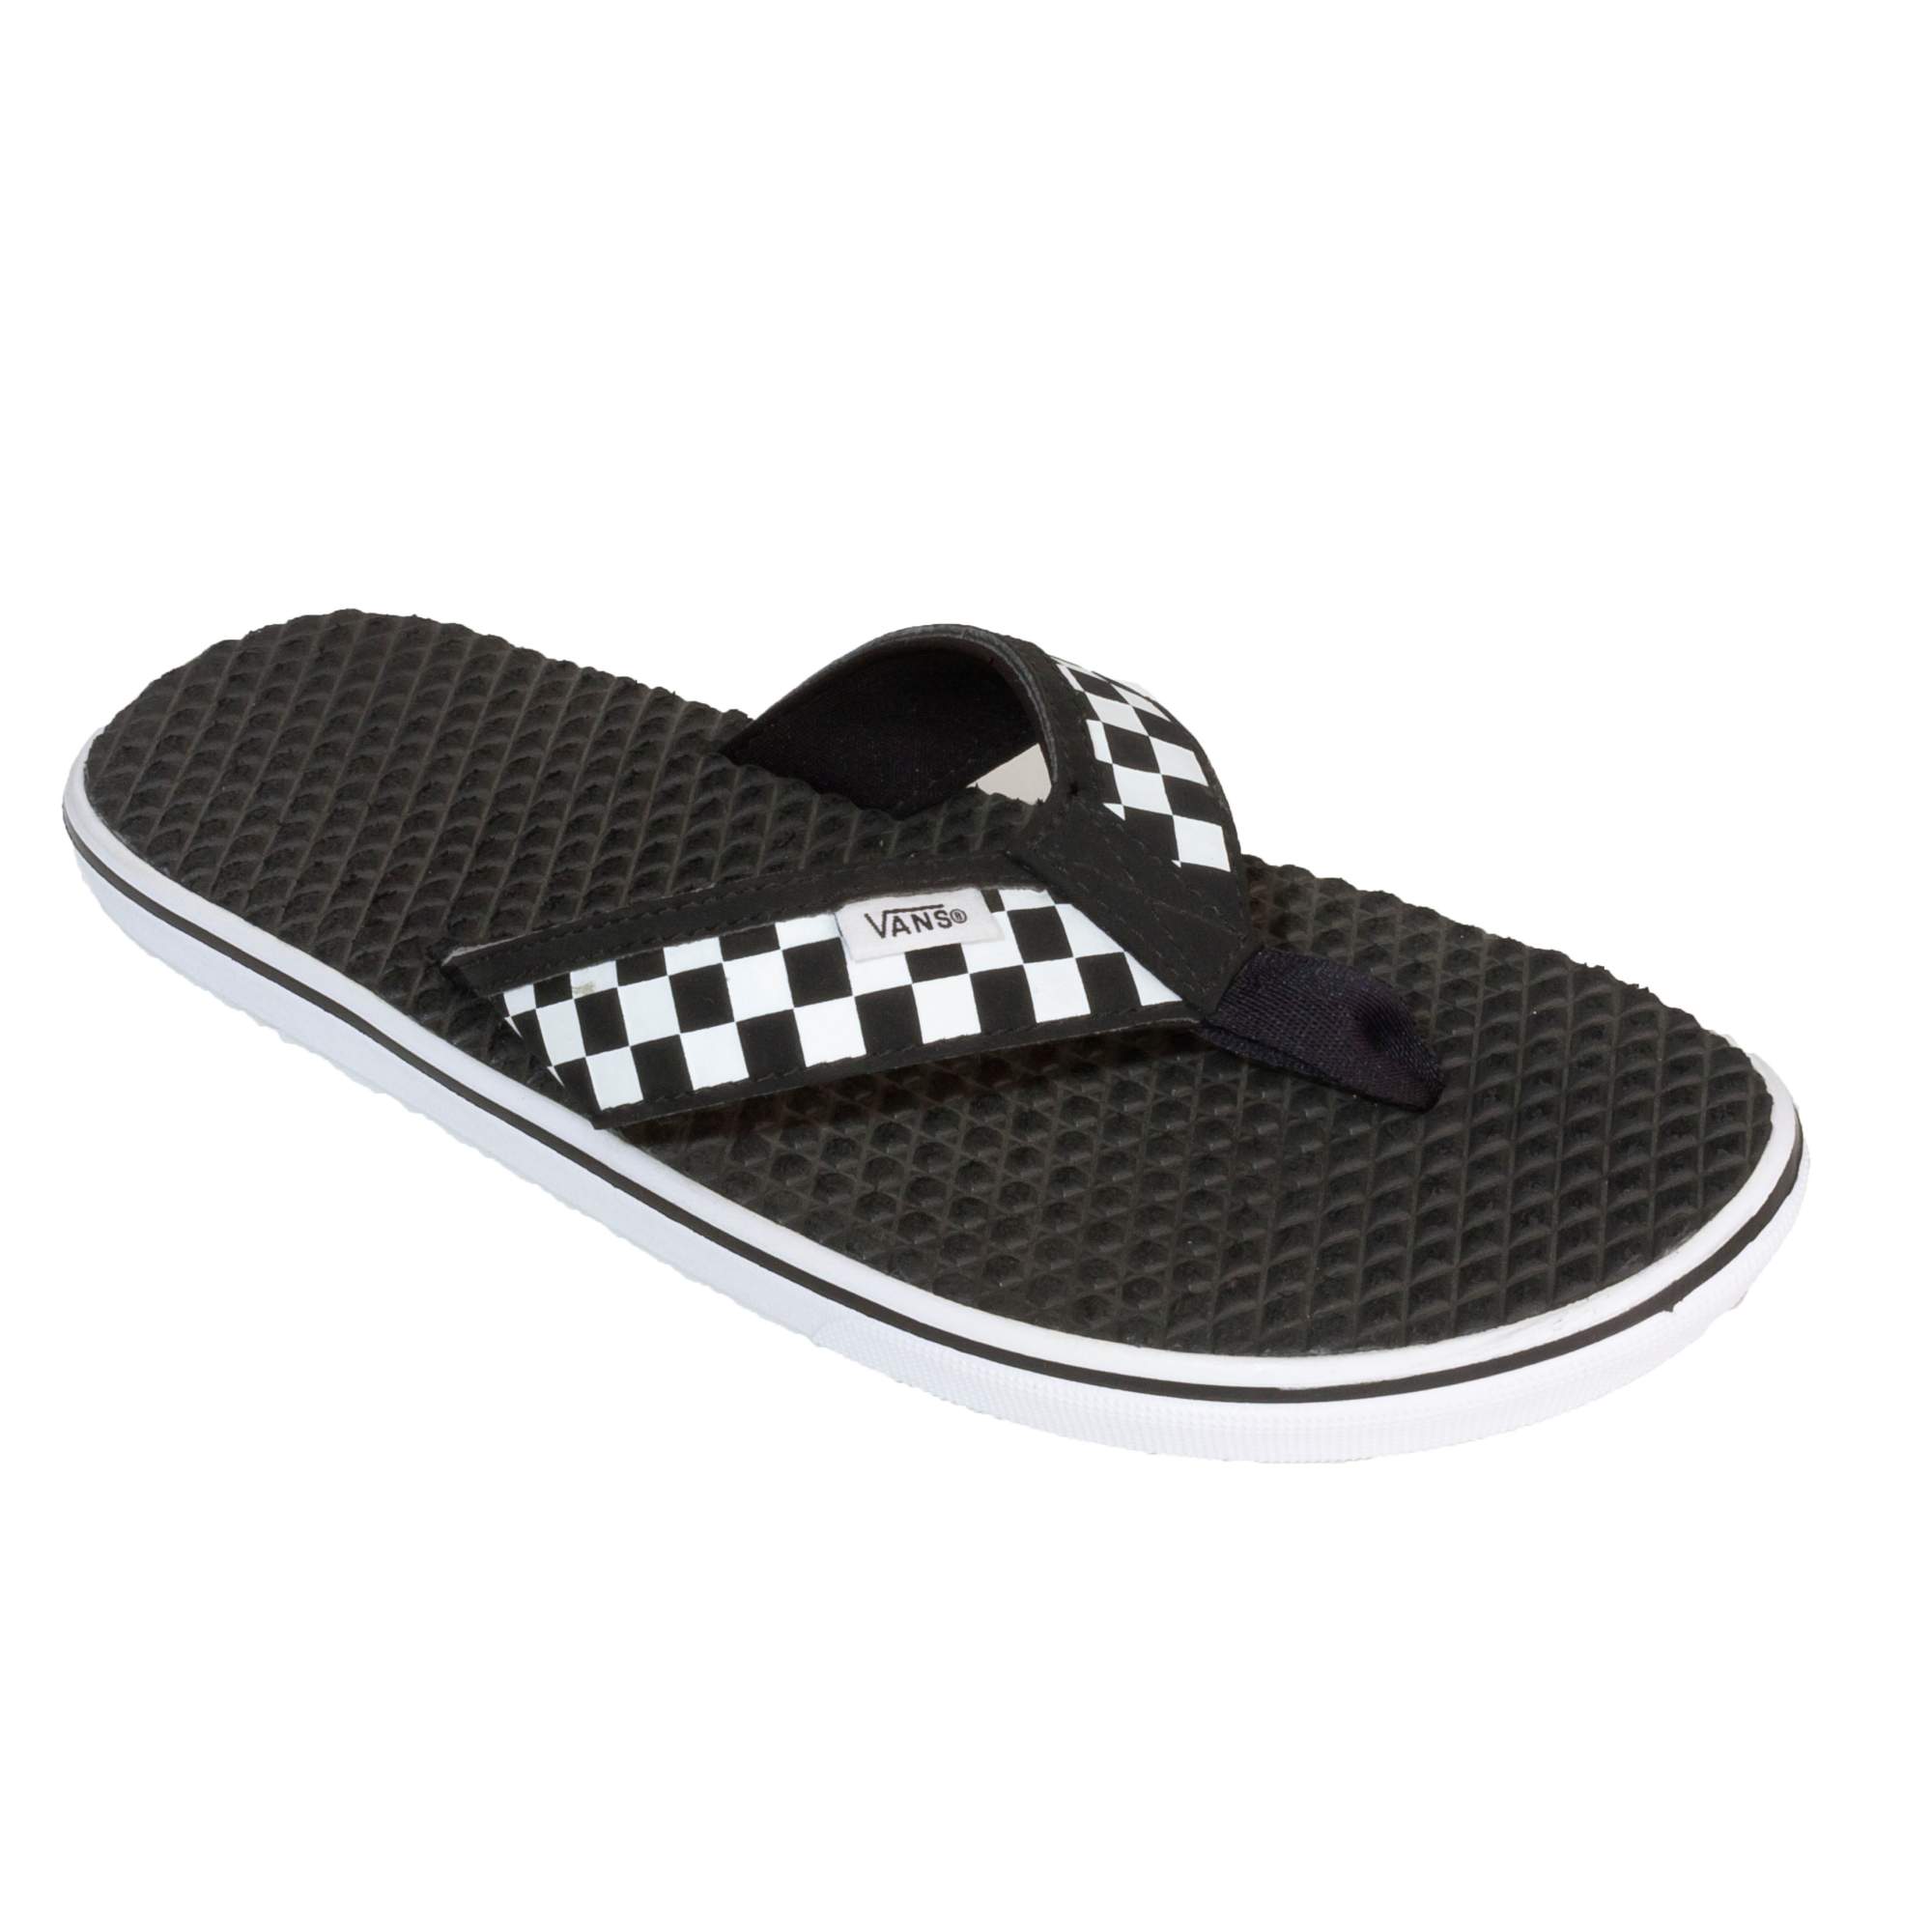 Vans La Costa Lite Checkerboard Black/White 